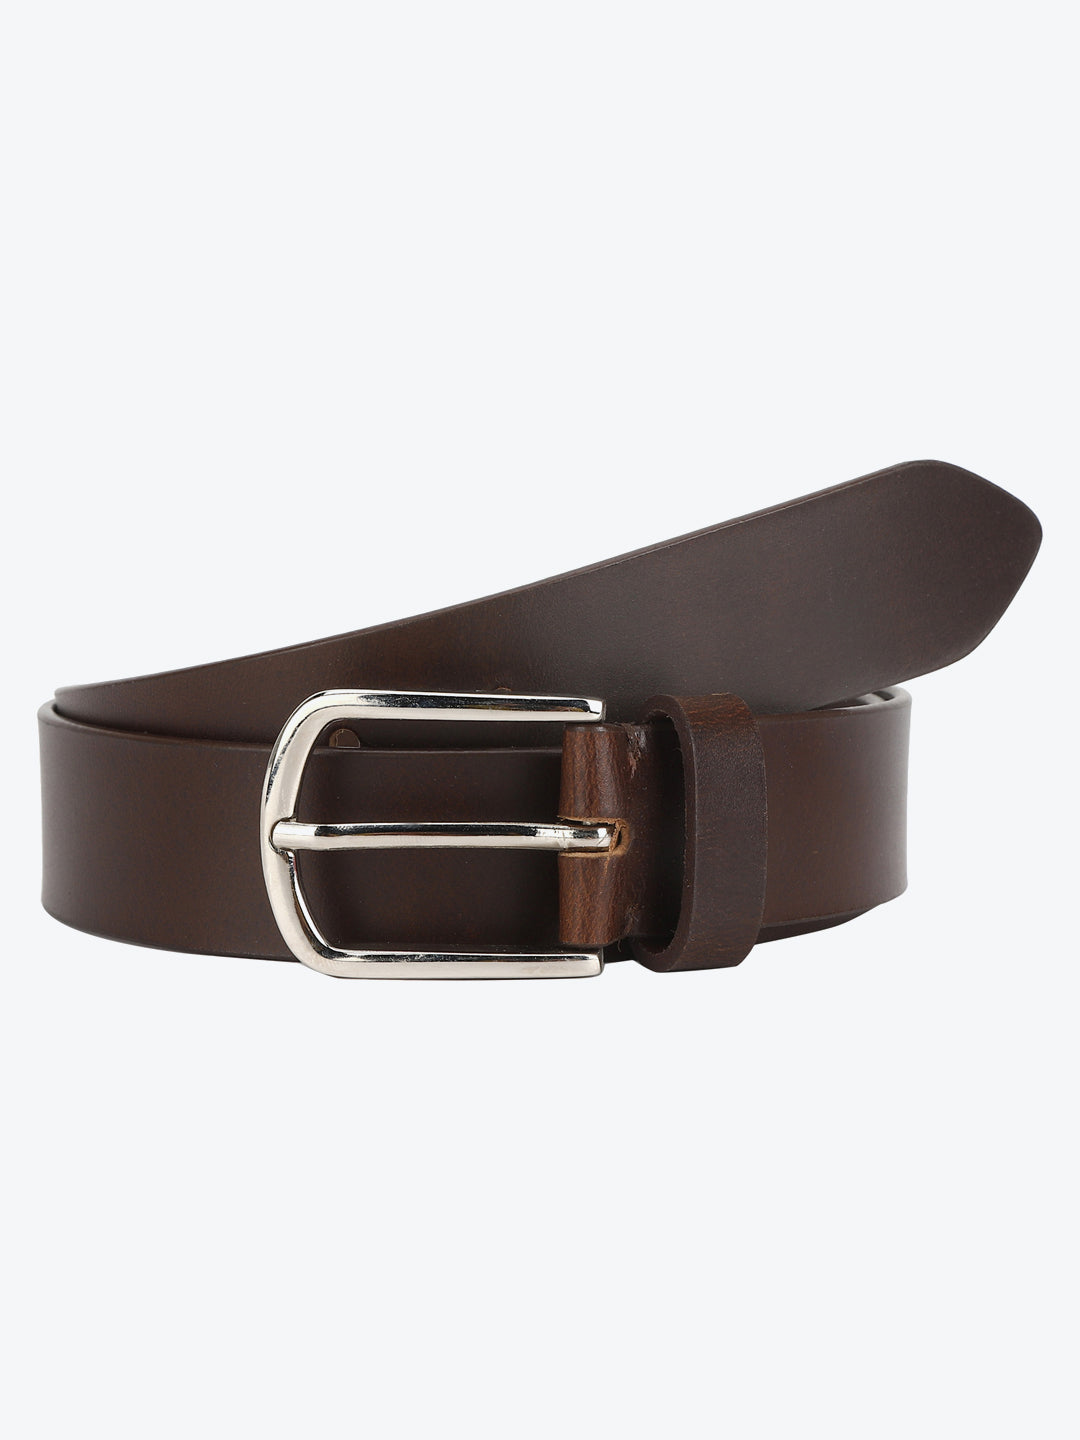 Two-tone brown belt - Aditi Wasan